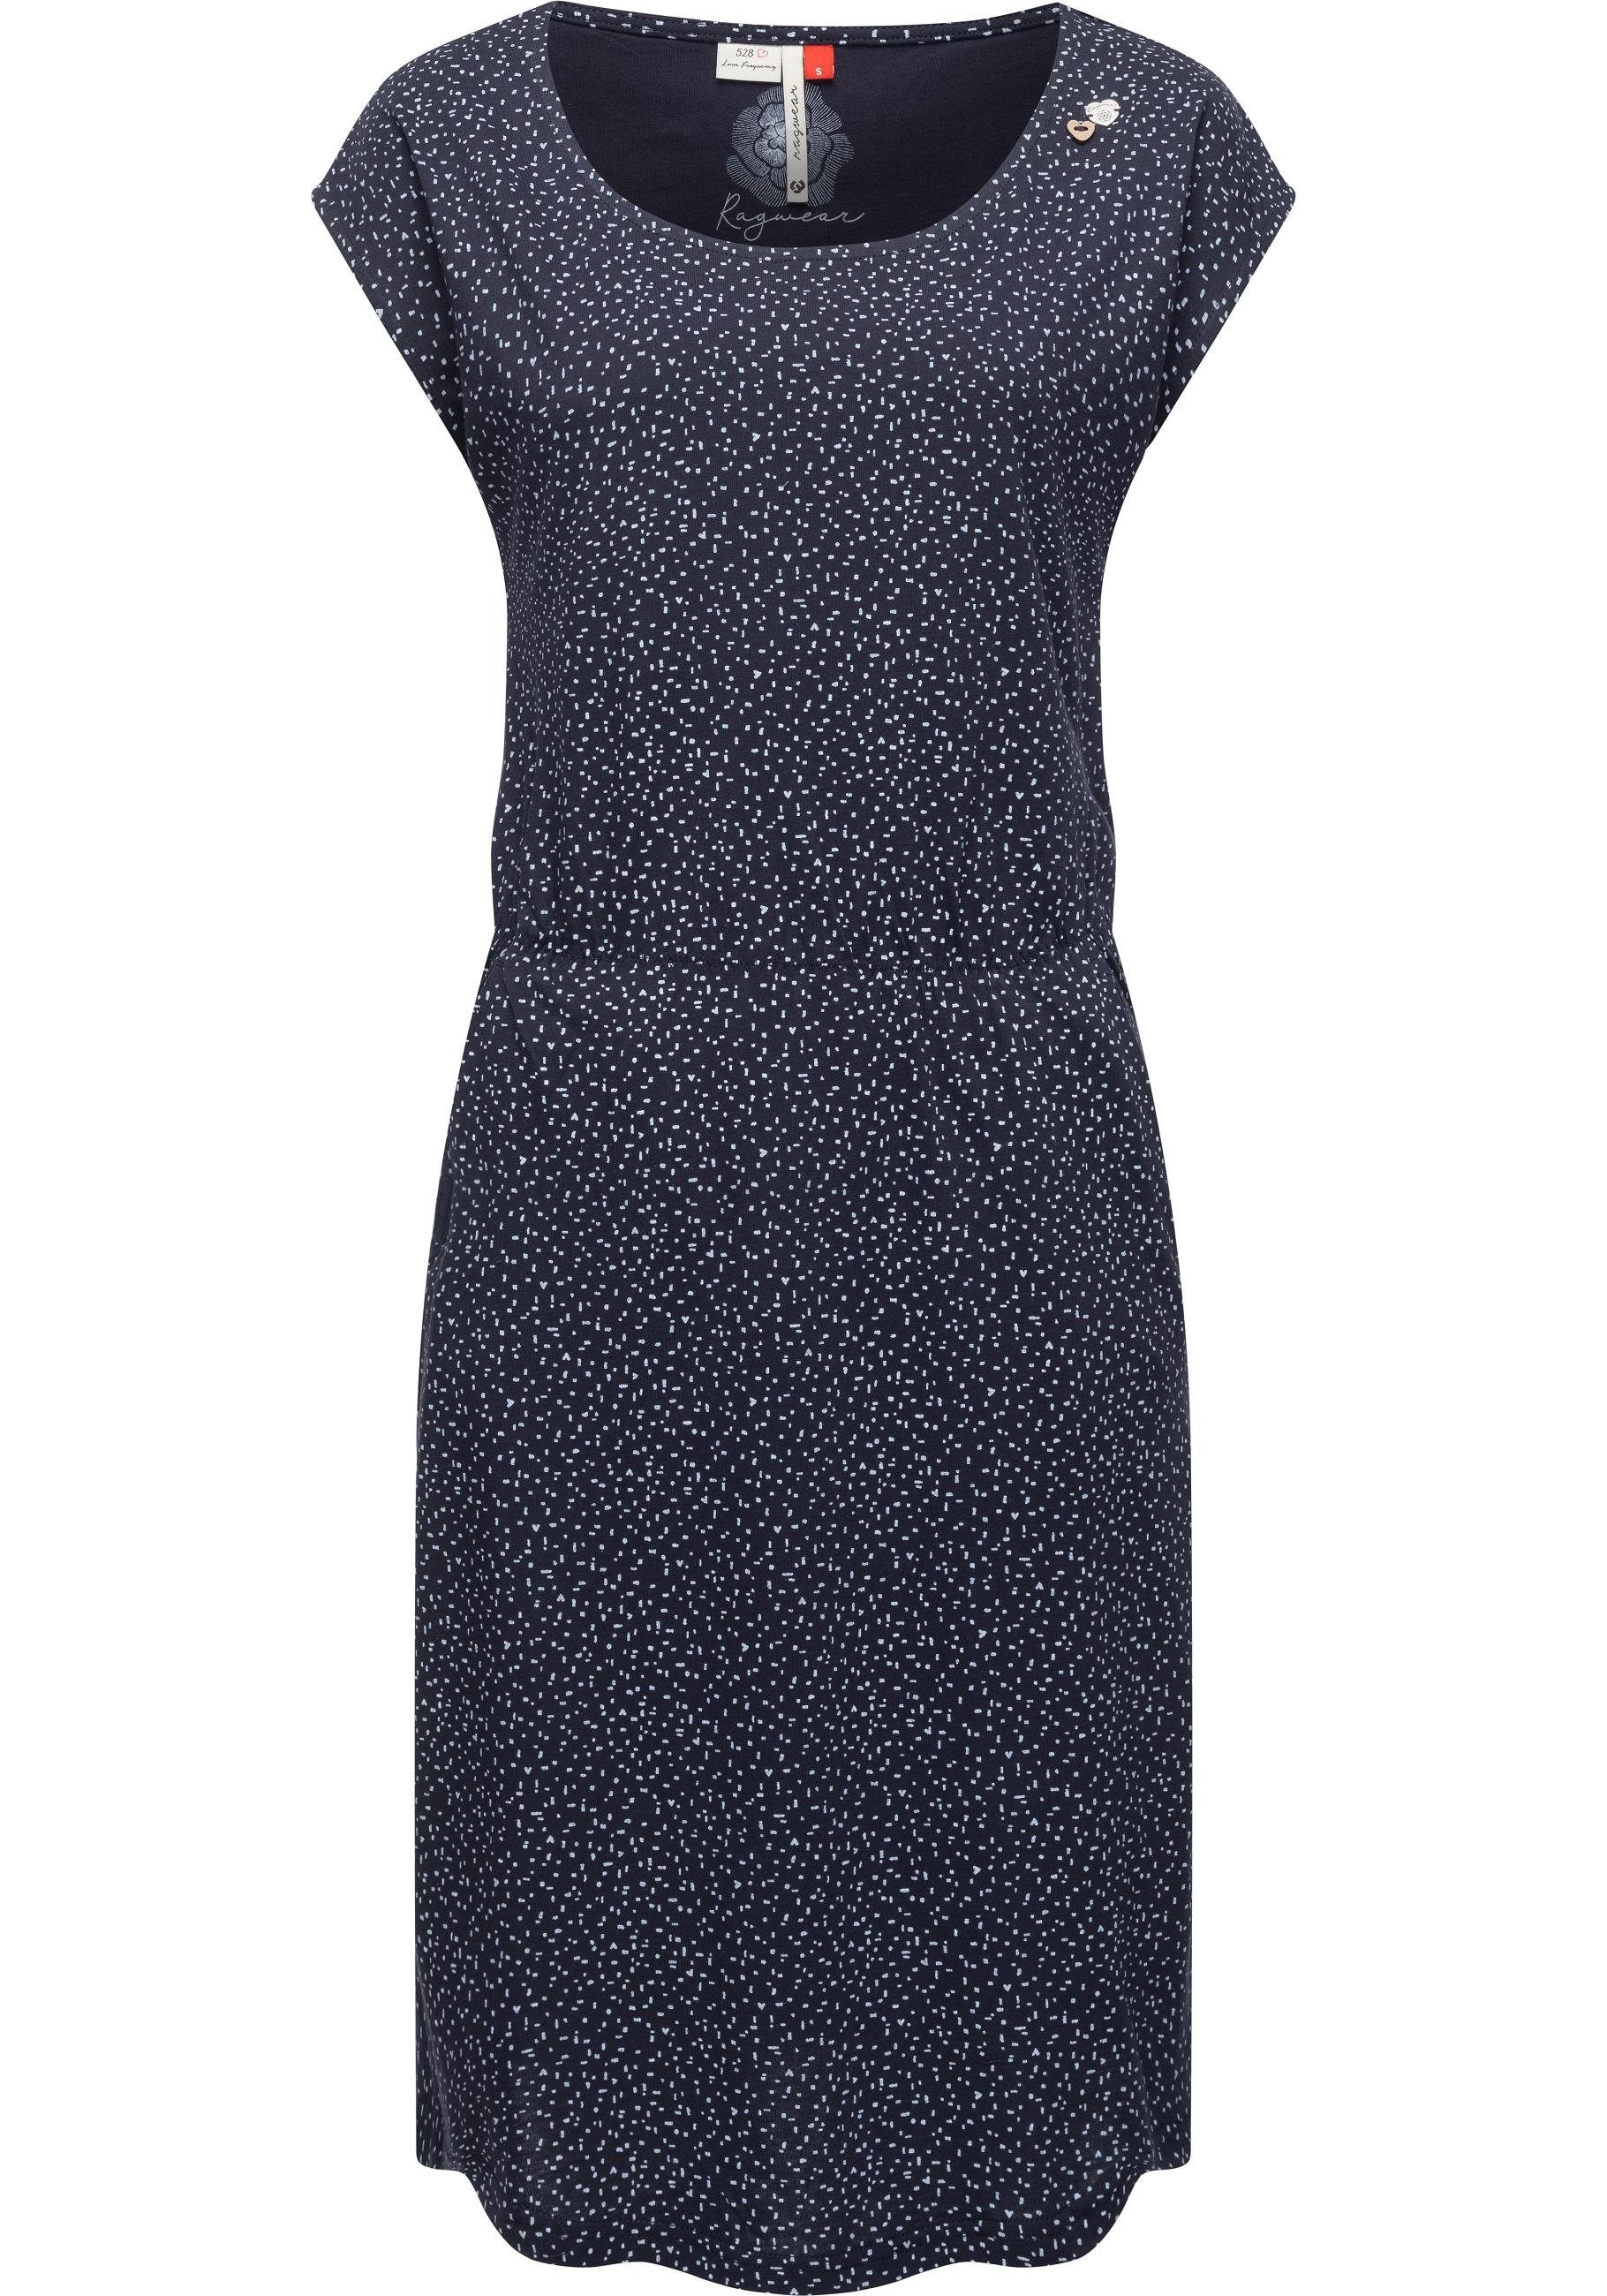 Ragwear Shirtkleid Lilithe stylisches Sommerkleid mit Alloverprint navy